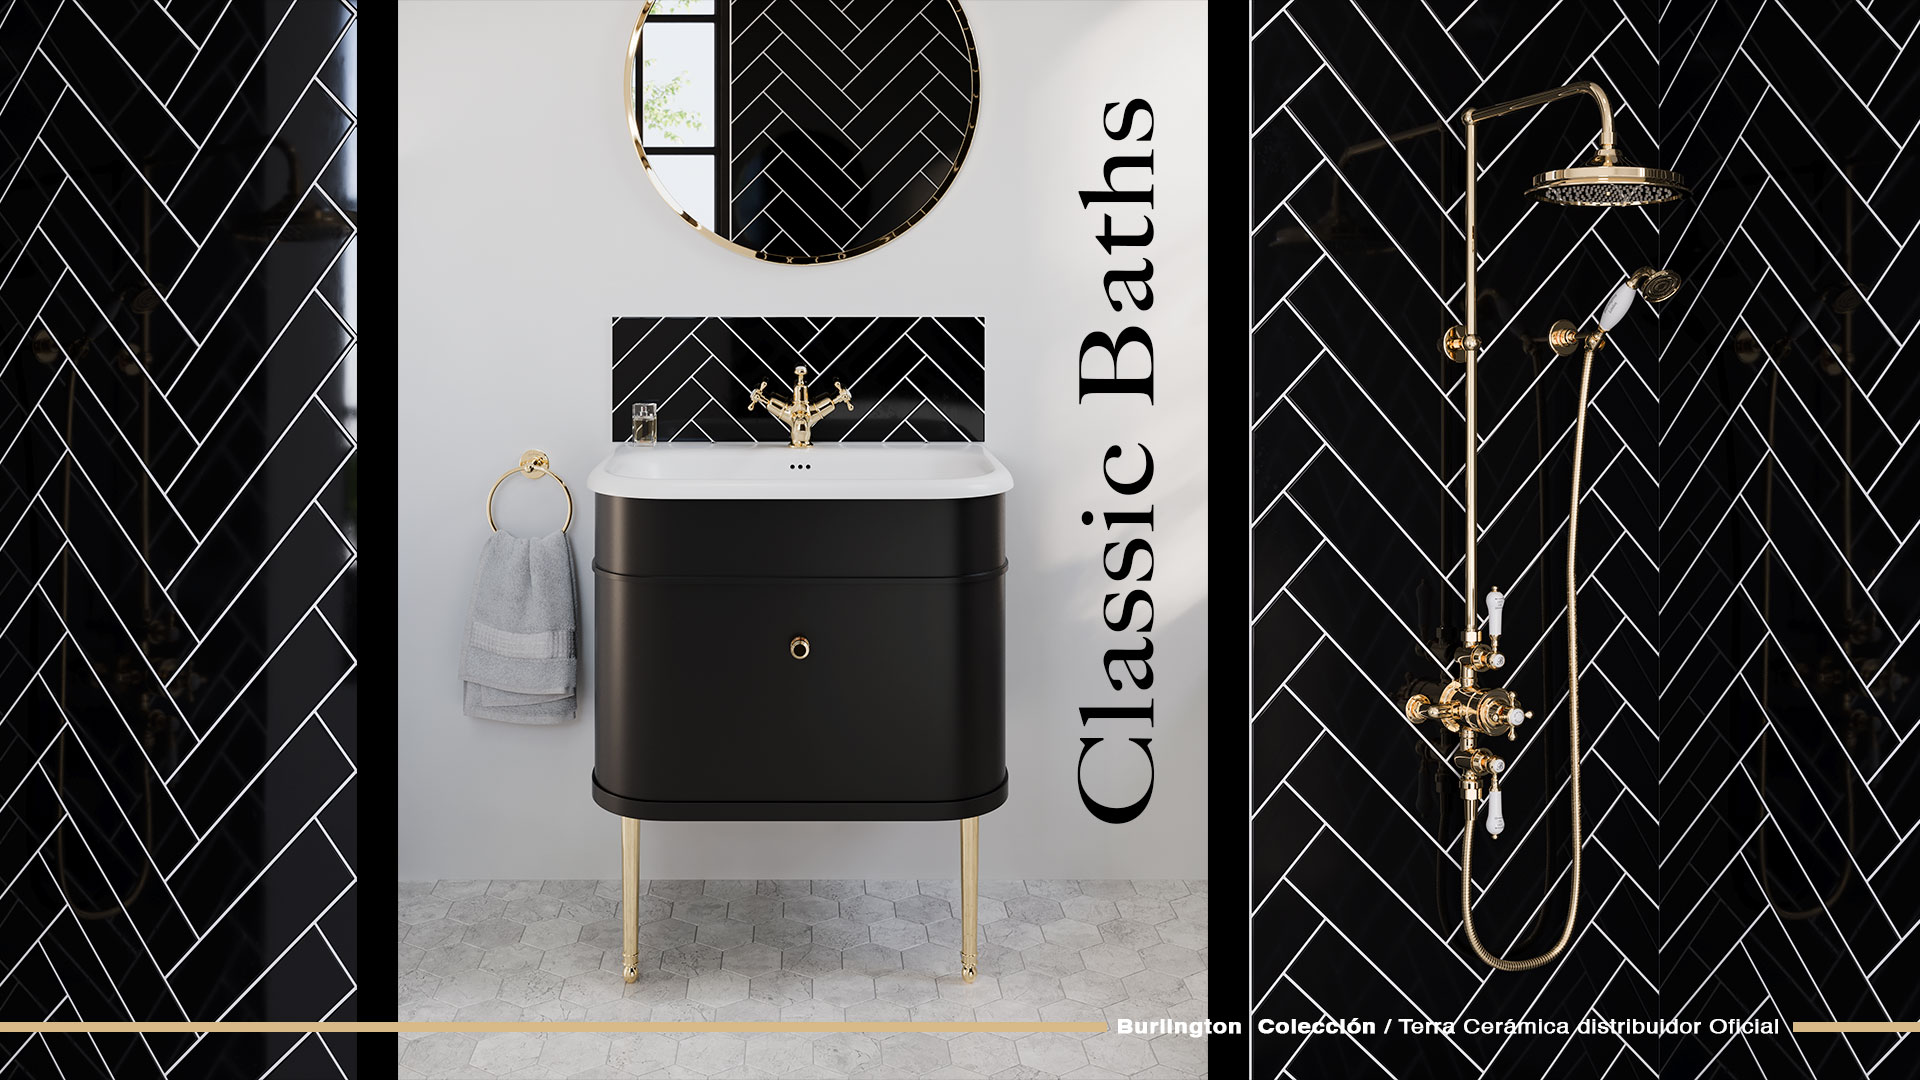 Decora tu baño al estilo clásico con diseño exclusivos Burlington